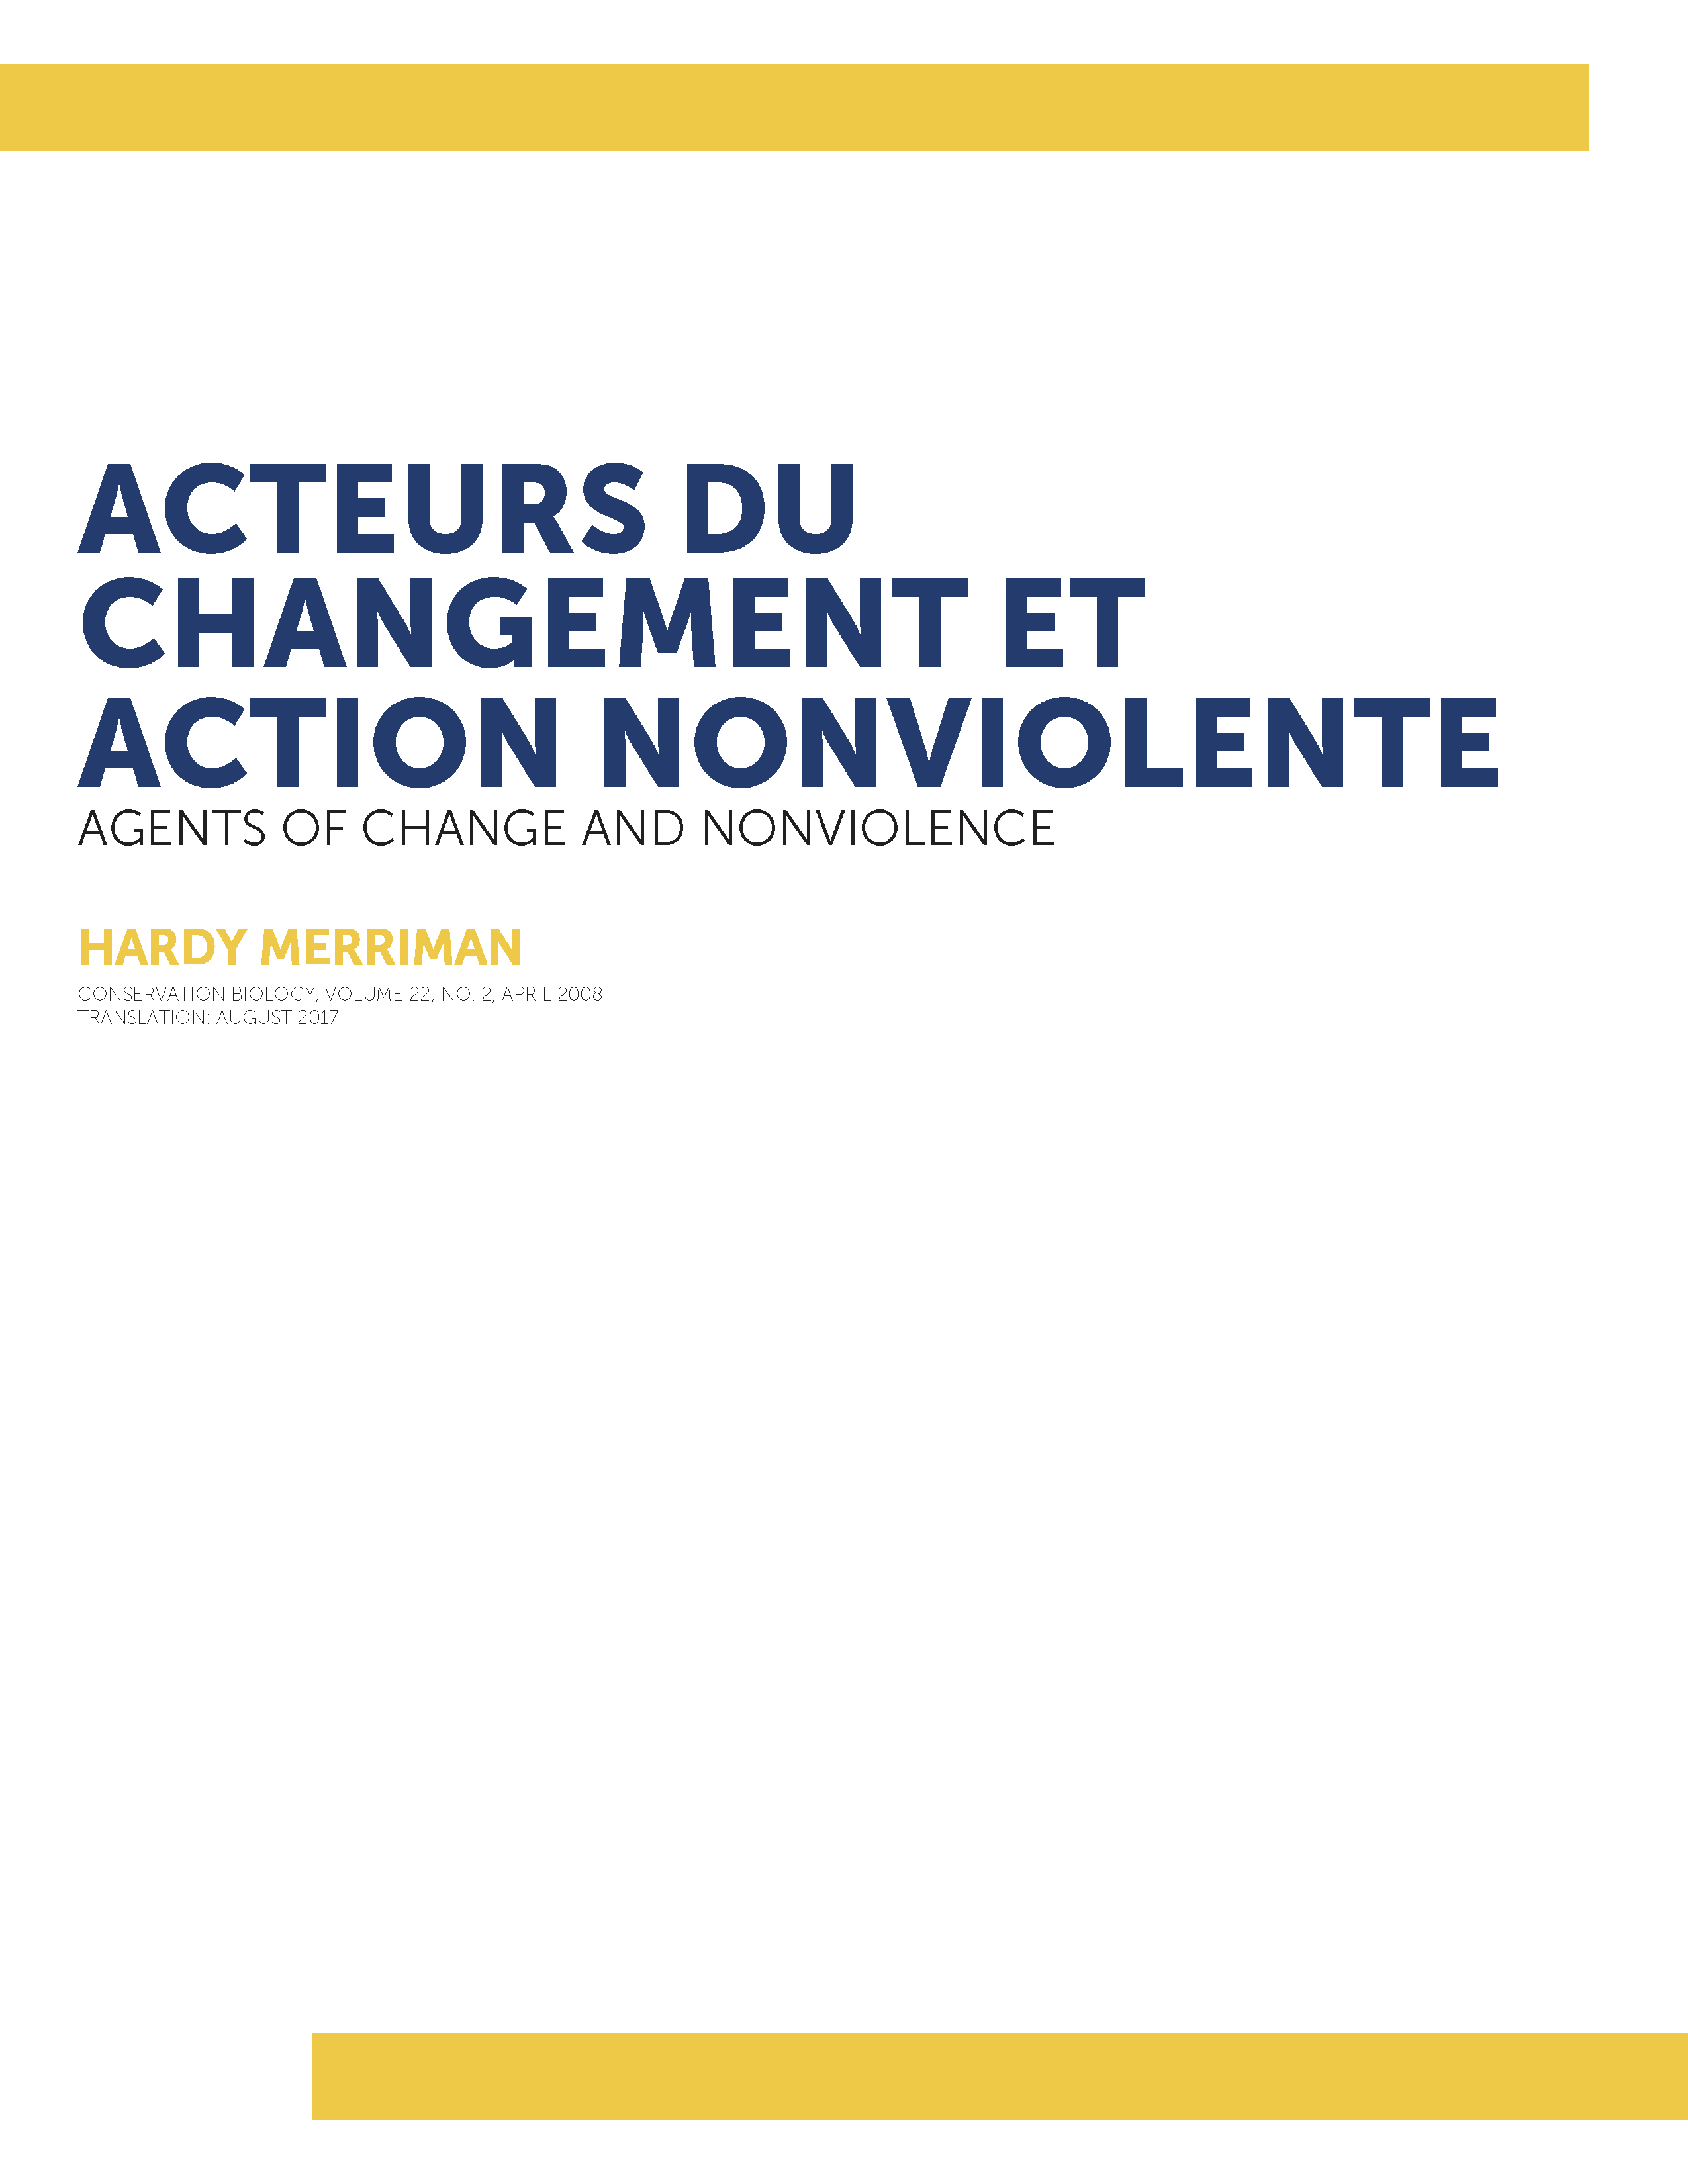 Acteurs du changement et action nonviolente